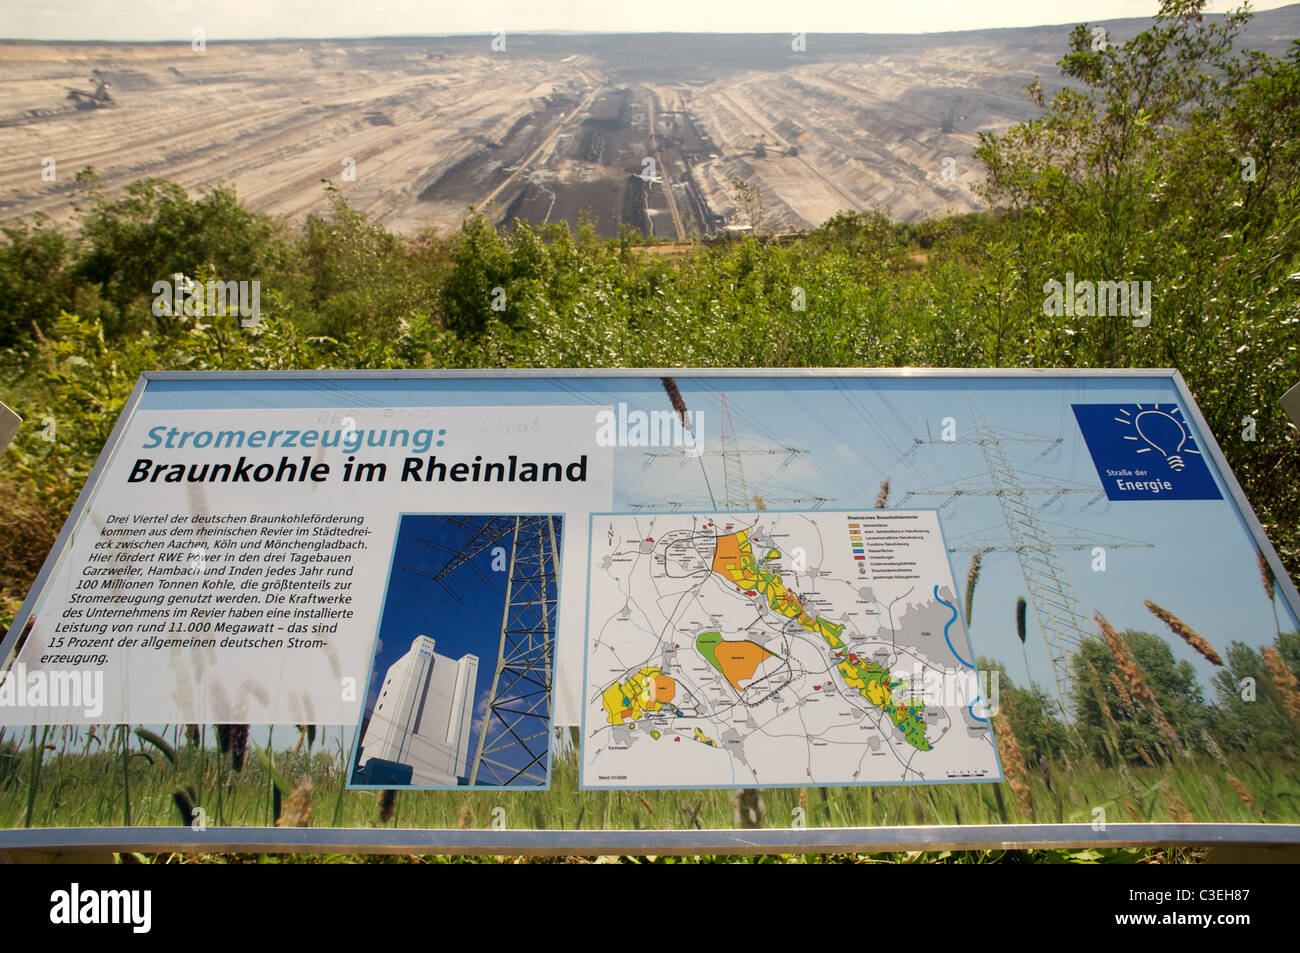 Public information board, open-cast coal mine, Germany. Stock Photo